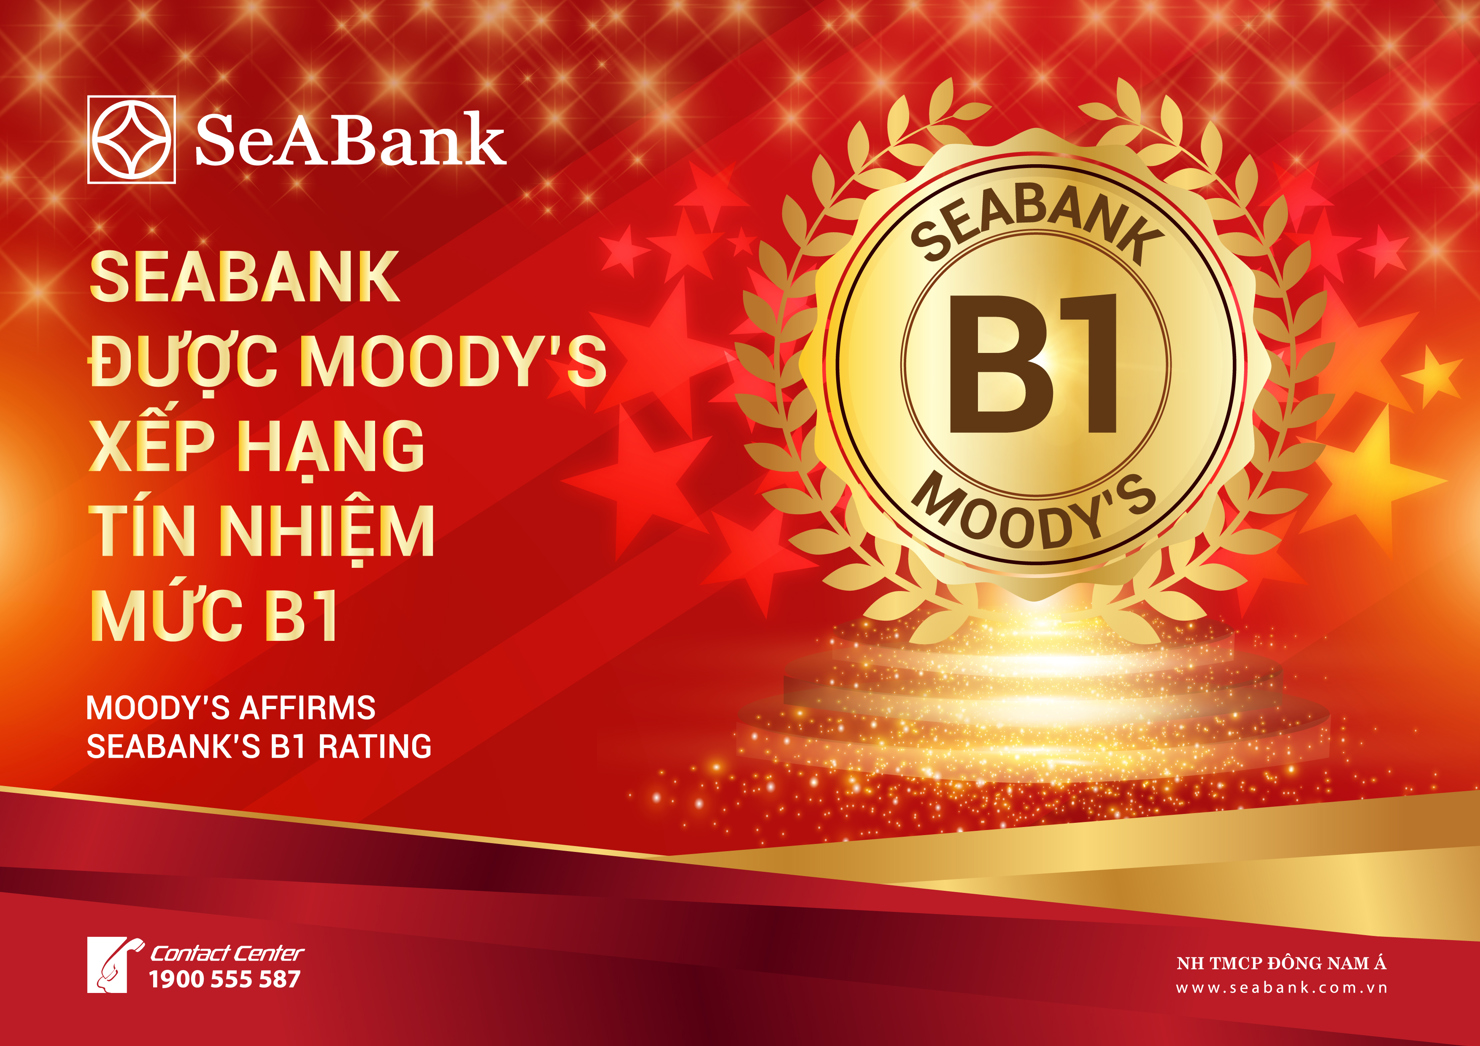 Moody's – một trong 3 tổ chức xếp hạng tín nhiệm uy tín nhất thế giới đã công bố kết quả xếp hạng tín nhiệm dài hạn mức B1 cho SeABank.